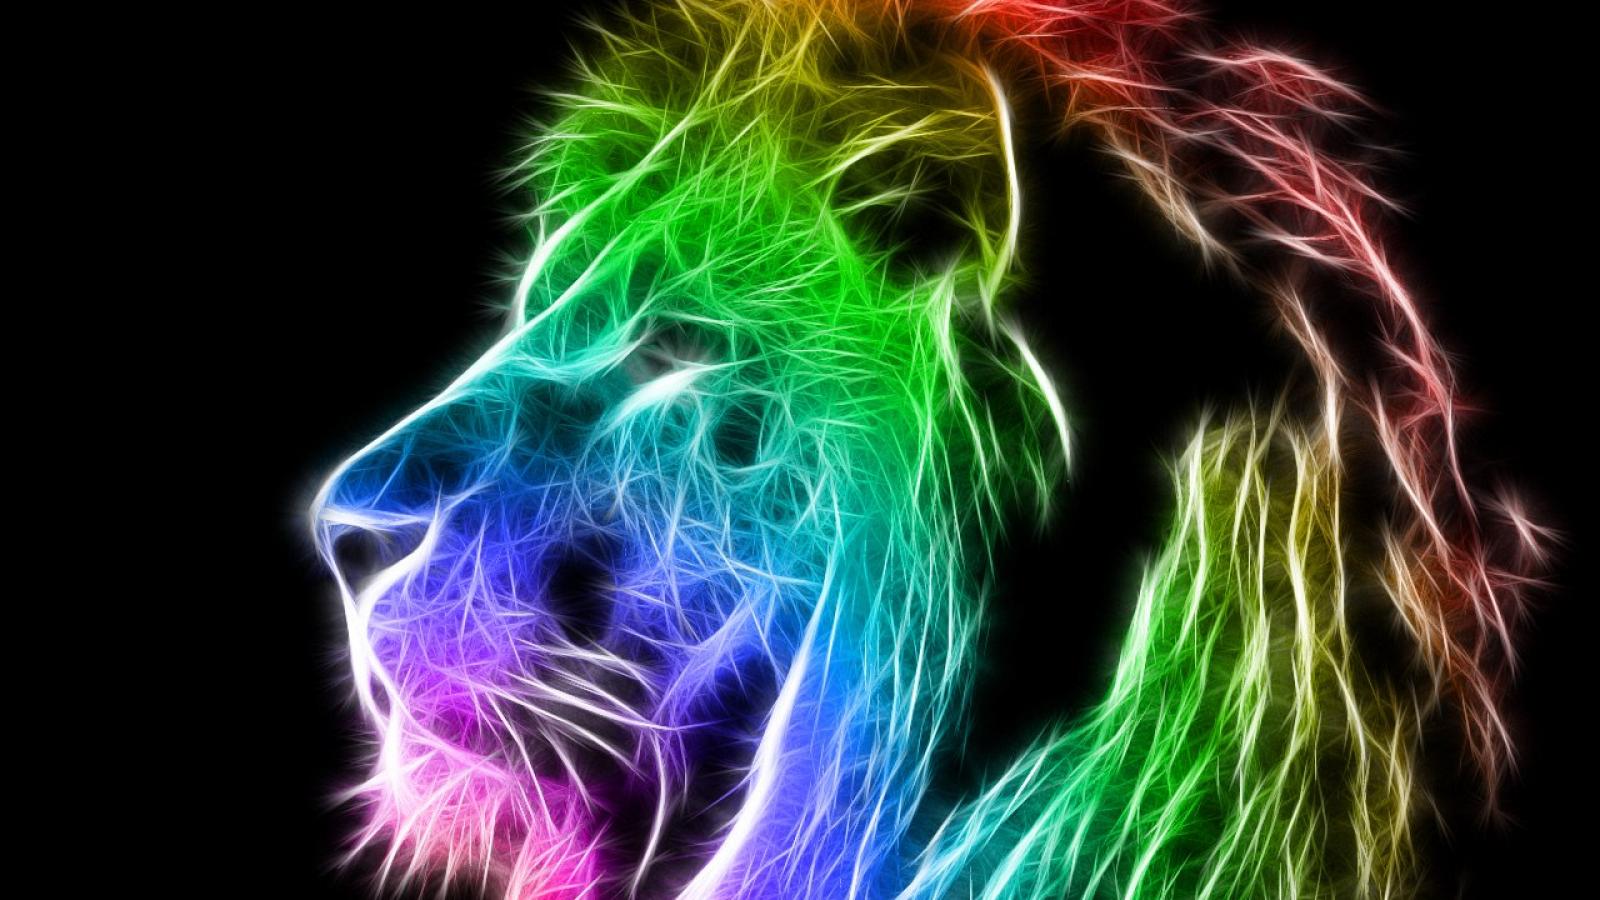 Colorful Lion Wallpaper - WallpaperSafari